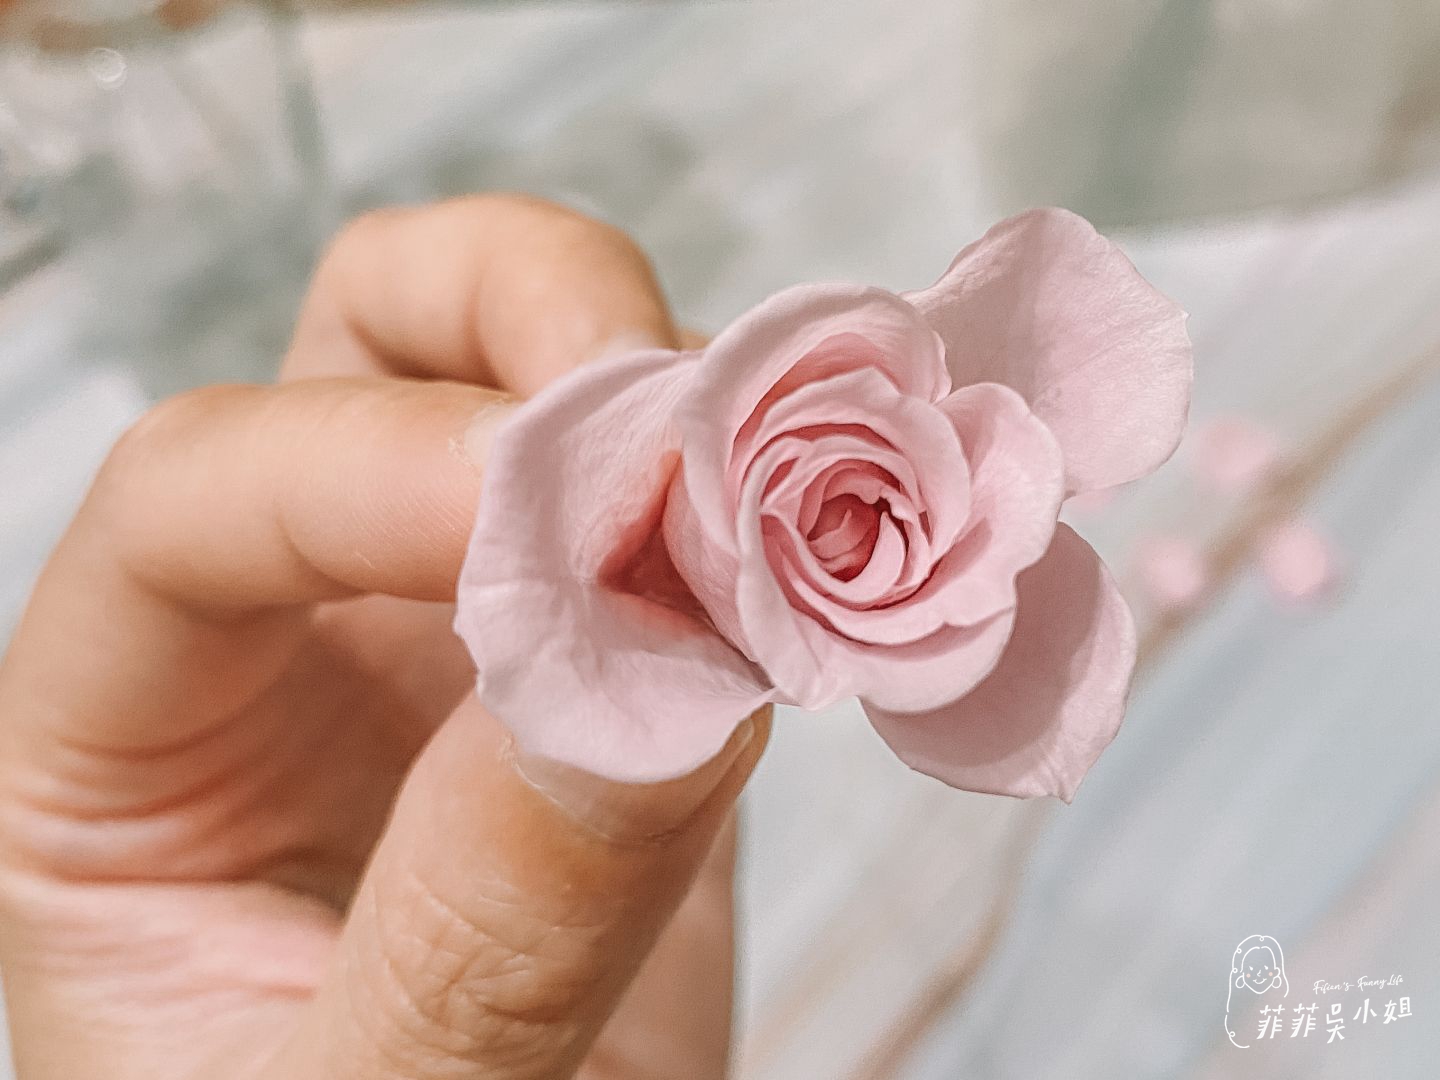 在家也能DIY超美捧花 Immerse Flower 永生花藝課程體驗心得 10大實用技巧分享 @菲菲吳小姐